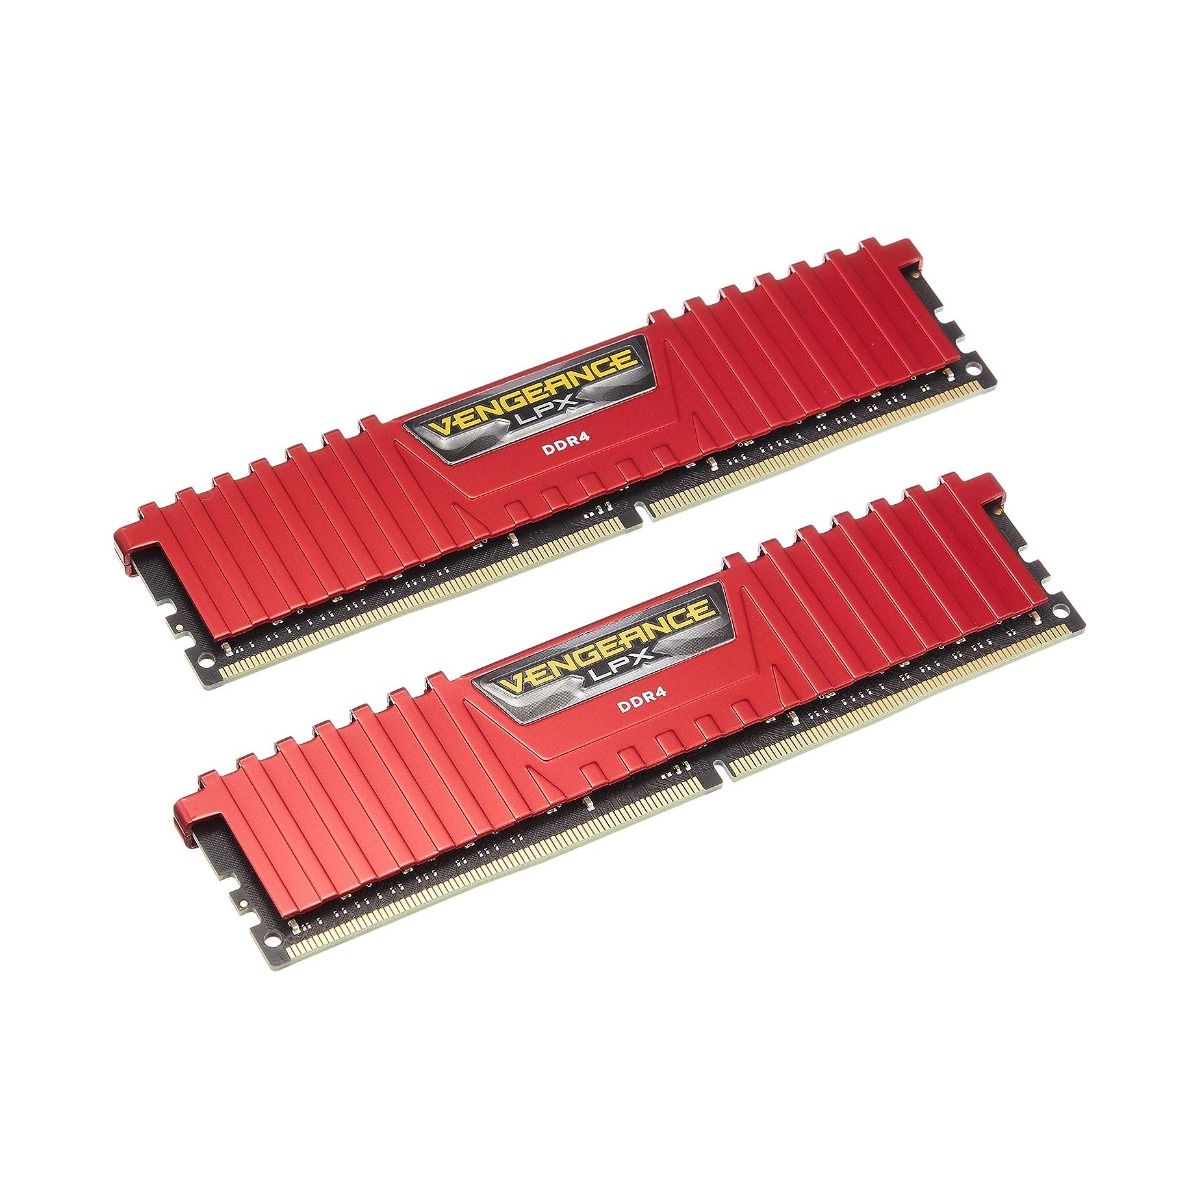 32GB Corsair Vengeance RAM / Memory Kit DDR4 2666MHz LPX Red